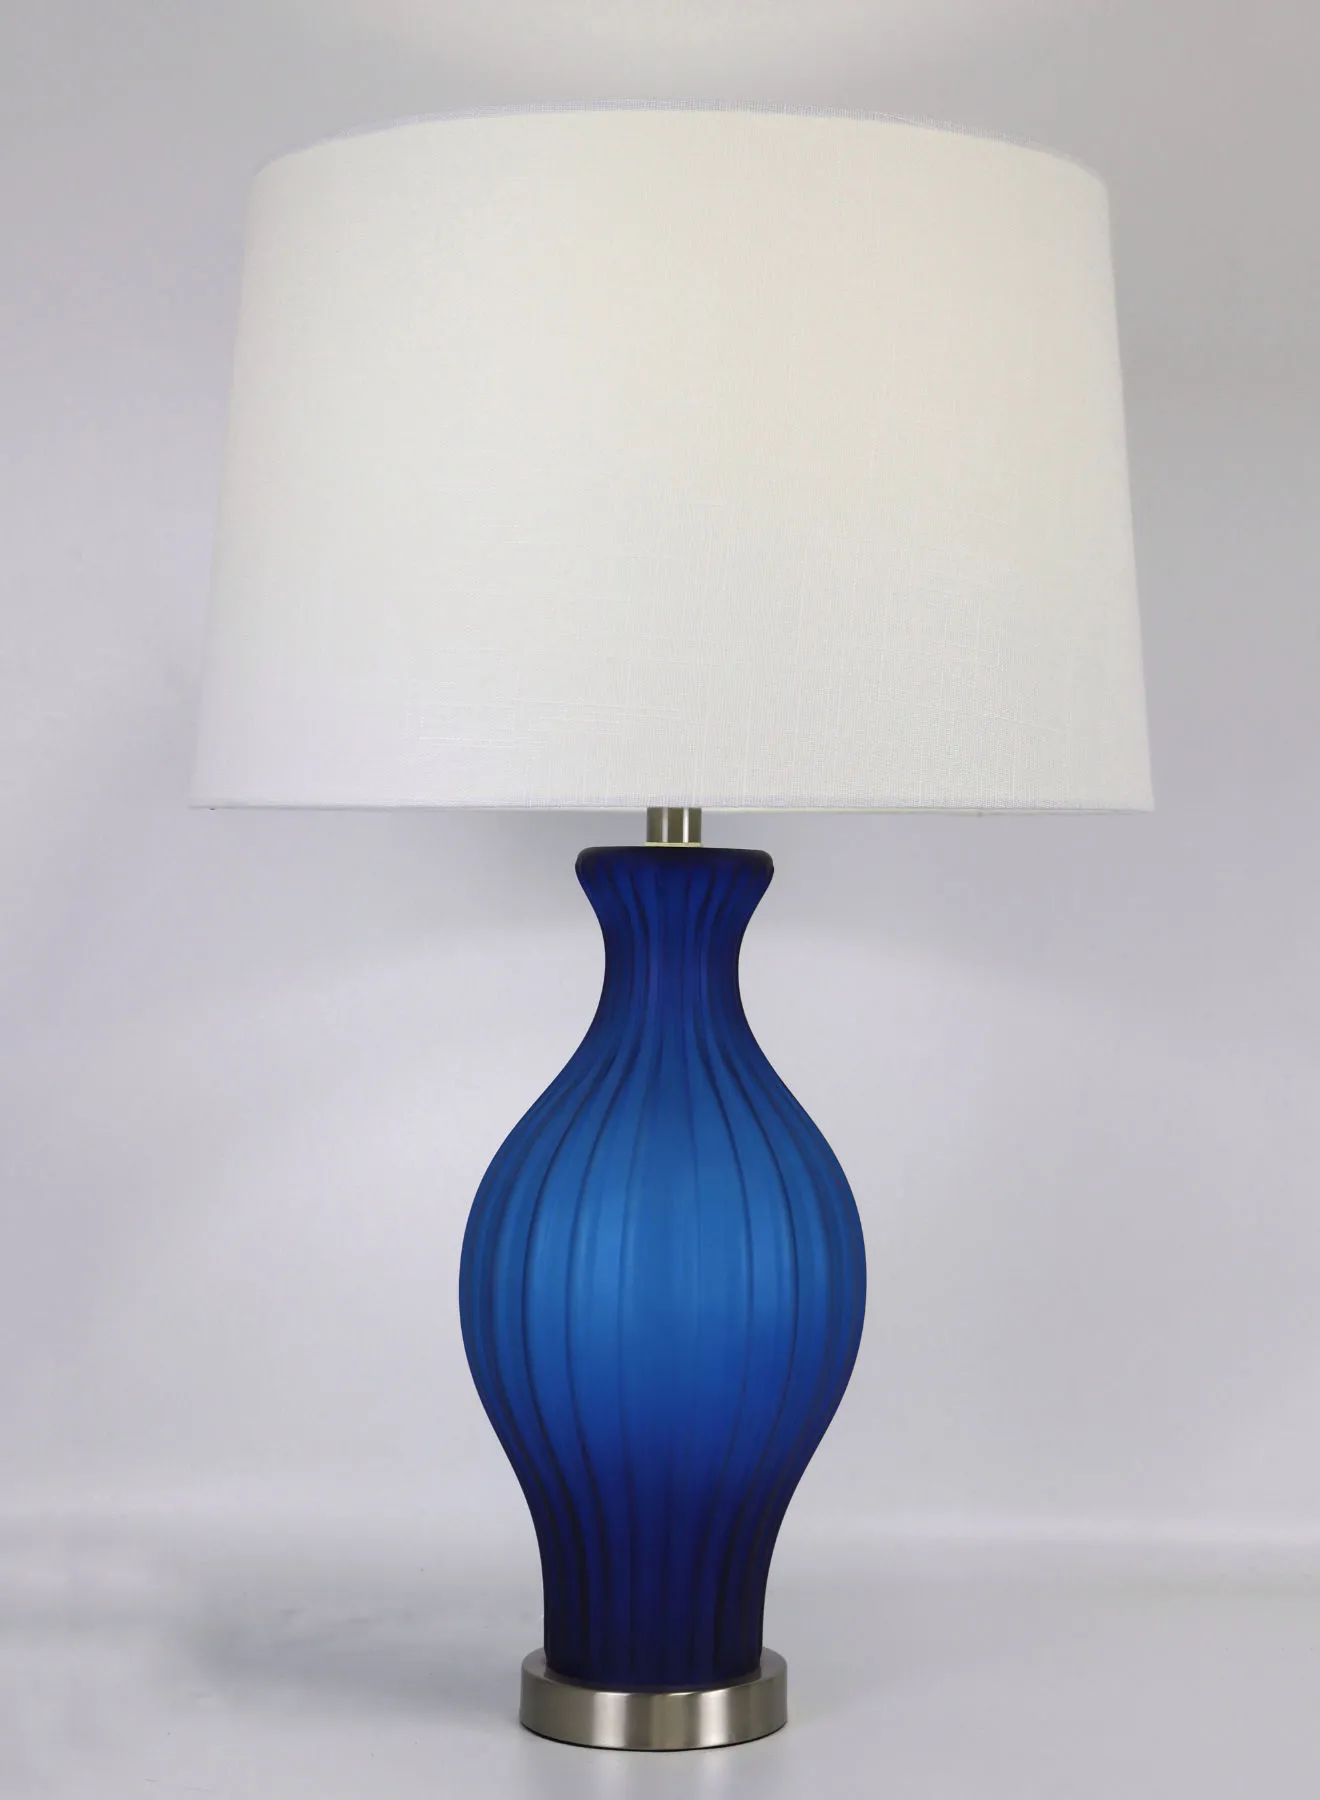 مصباح طاولة زجاجي بتصميم عصري من ebb & flow مادة فاخرة فريدة من نوعها ذات جودة عالية لمنزل أنيق مثالي RSN71018 أزرق 17 × 27